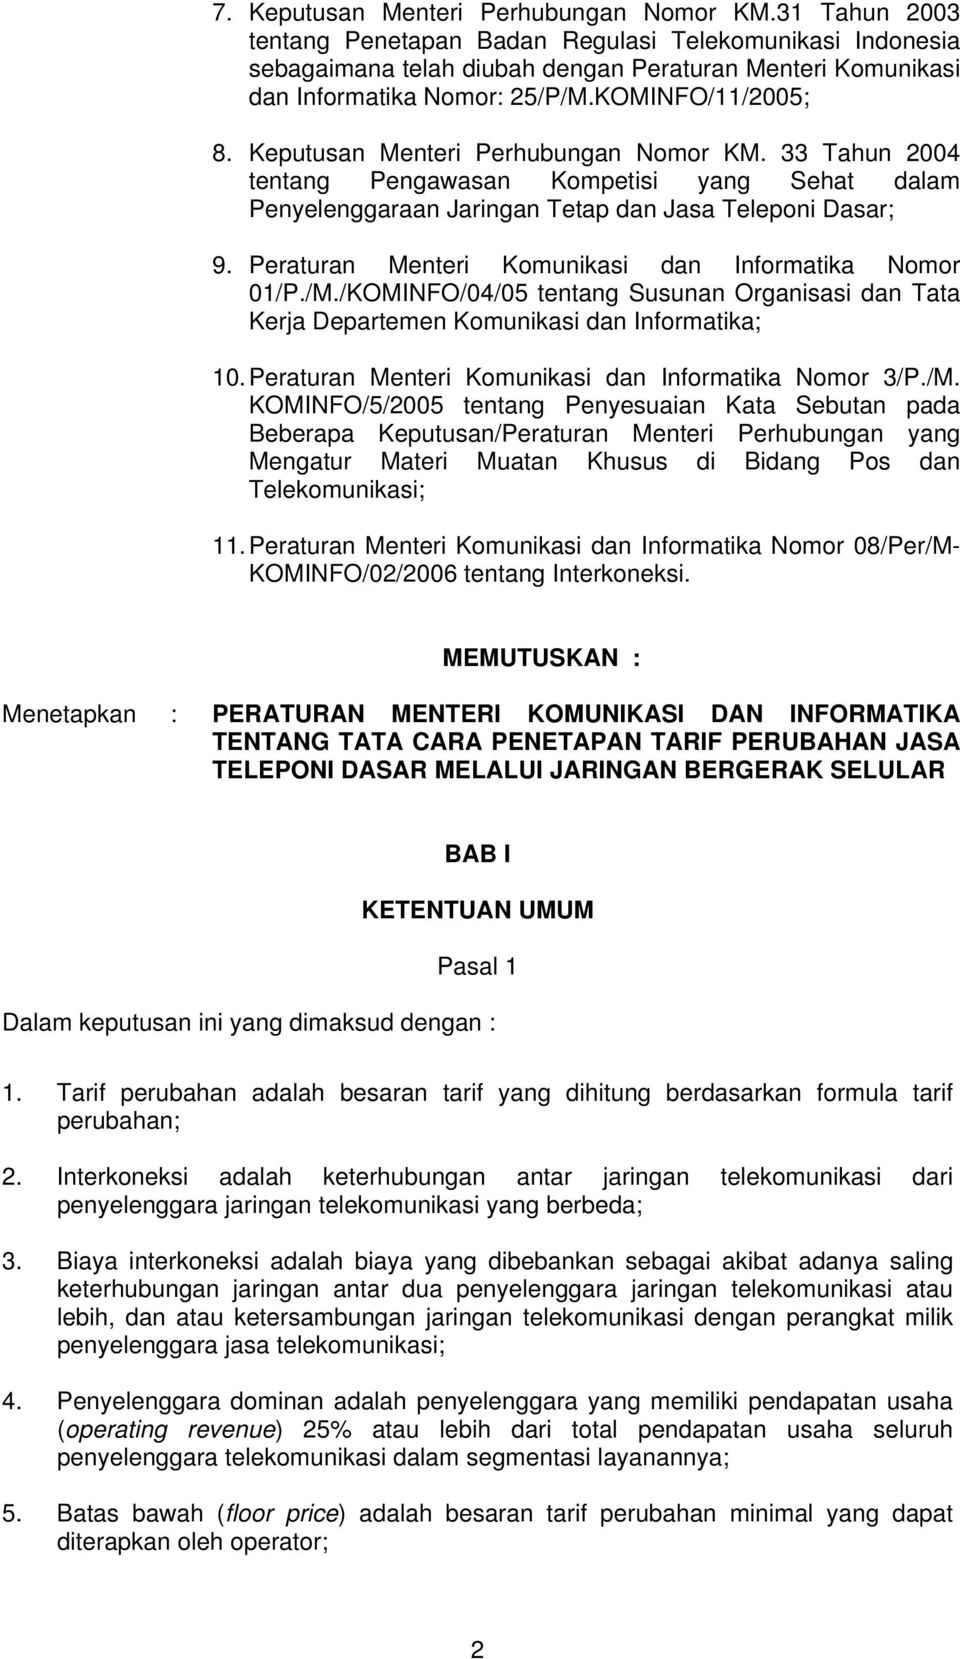 Keputusan Menteri Perhubungan Nomor KM. 33 Tahun 2004 tentang Pengawasan Kompetisi yang Sehat dalam Penyelenggaraan Jaringan Tetap dan Jasa Teleponi Dasar; 9.